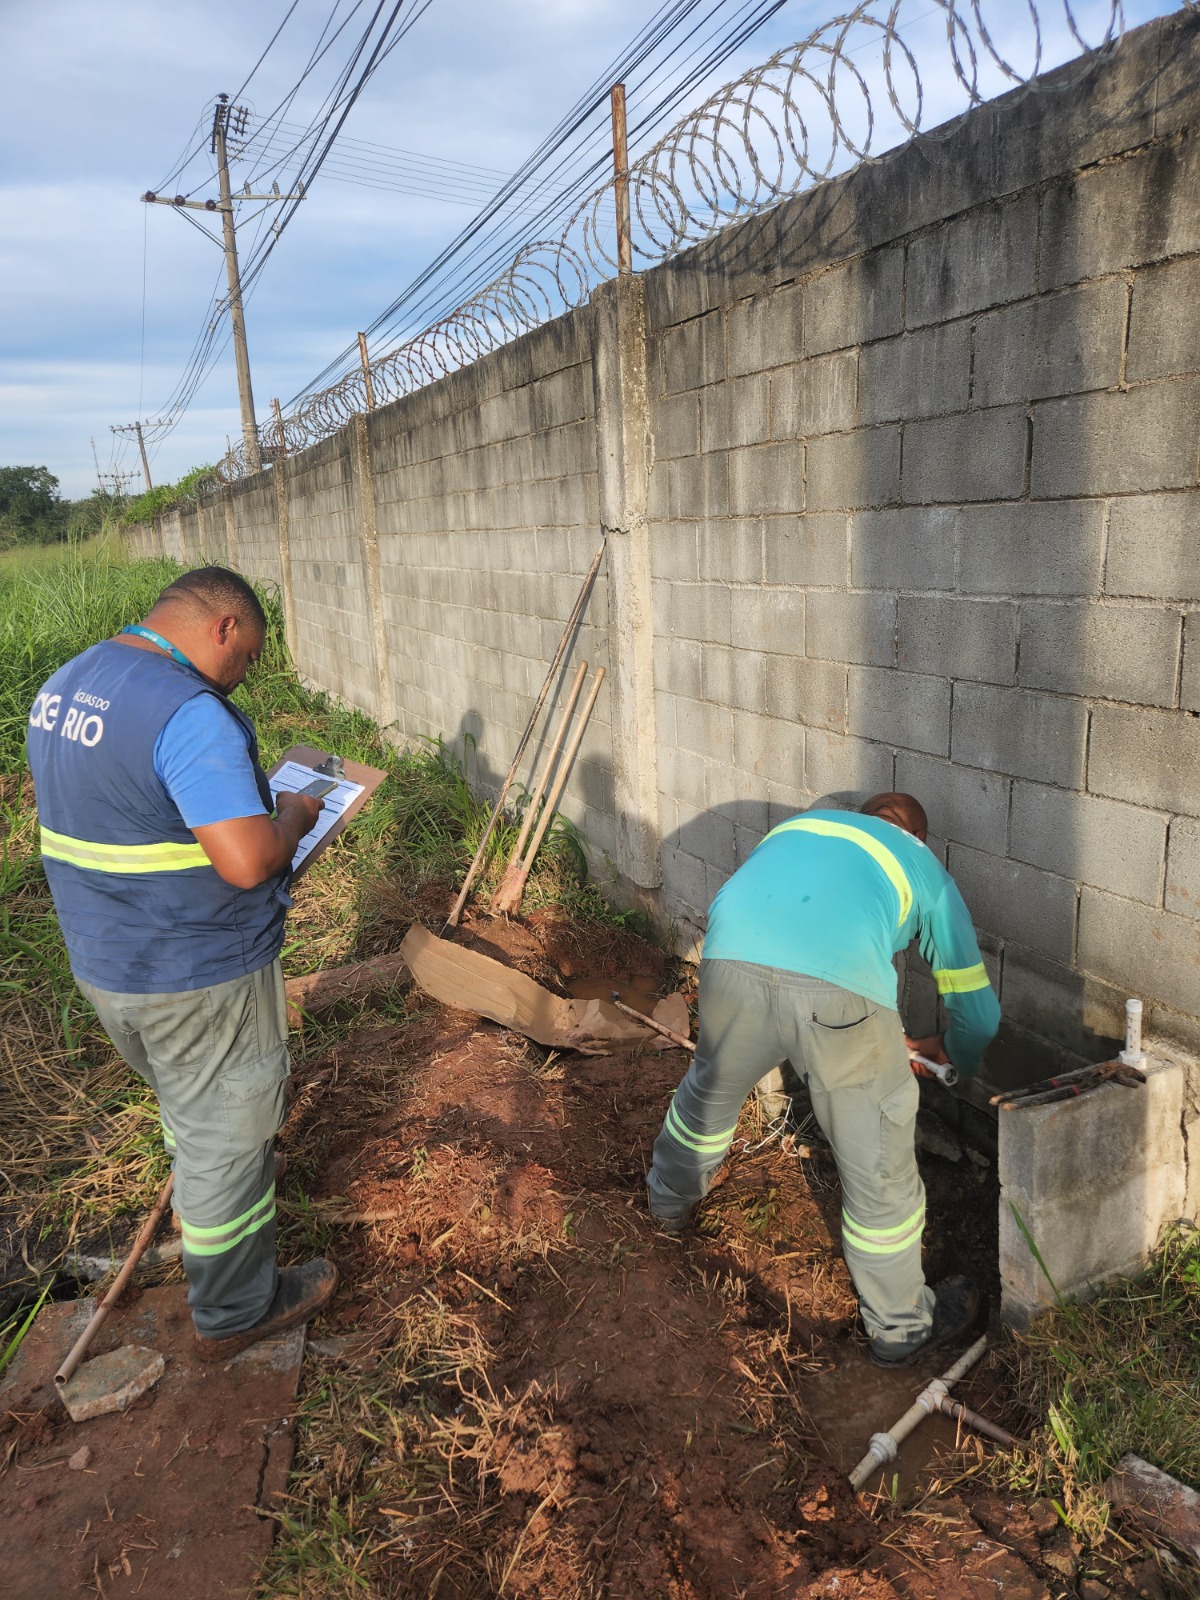 Distribuidora de rações é notificada por furto de água na Baixada Fluminense (Foto: Divulgação)